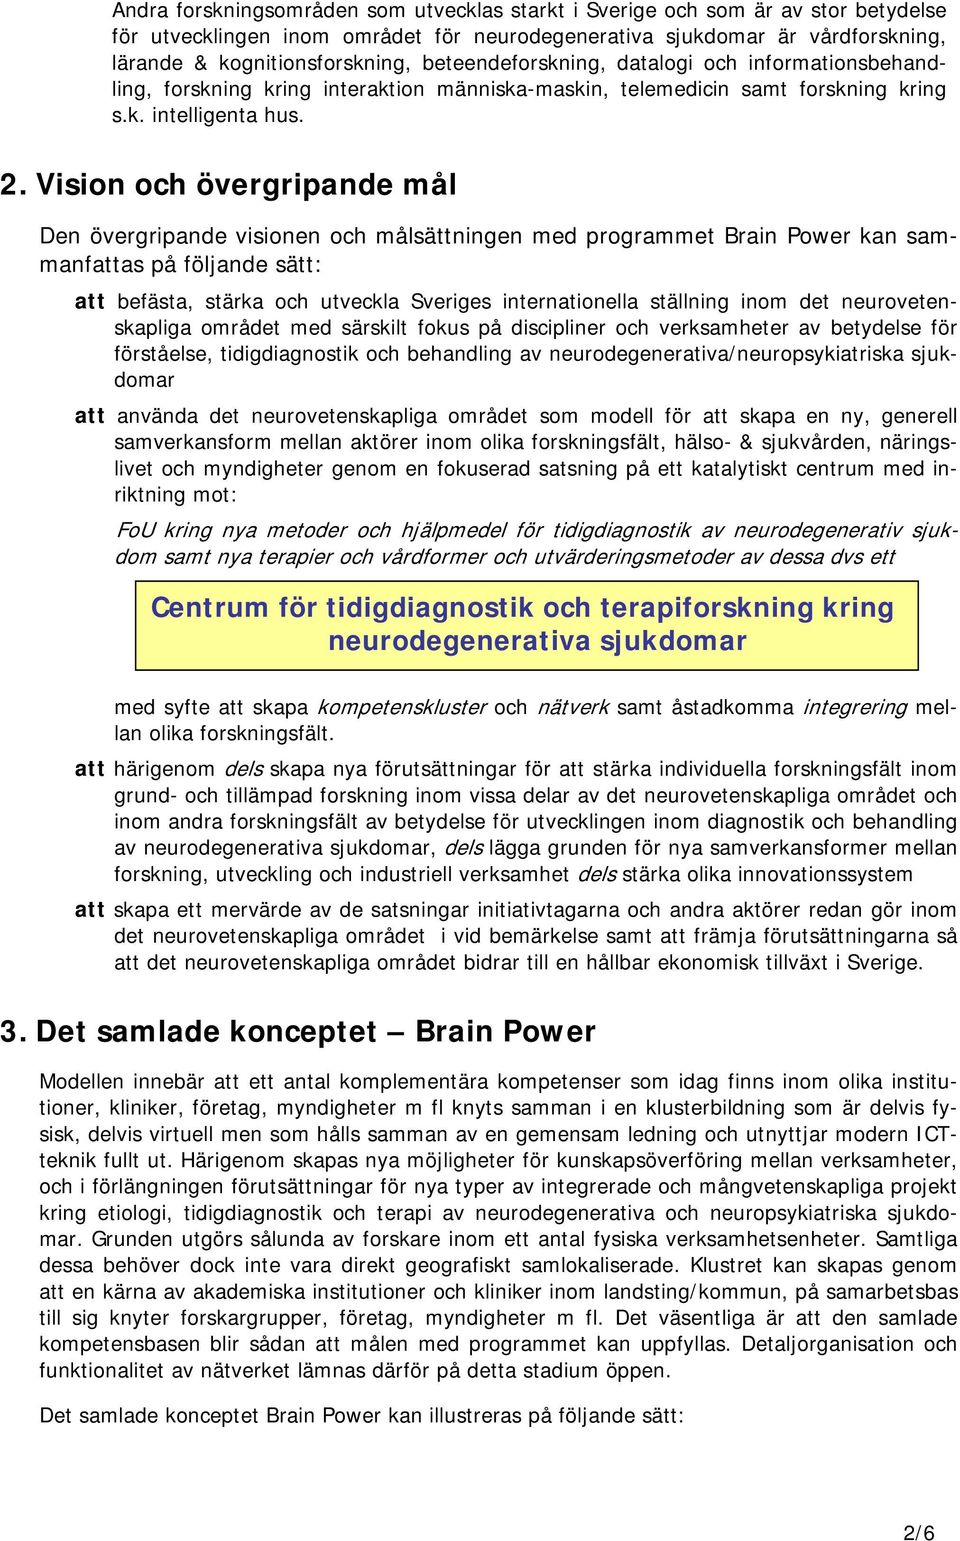 Vision och övergripande mål Den övergripande visionen och målsättningen med programmet Brain Power kan sammanfattas på följande sätt: att befästa, stärka och utveckla Sveriges internationella